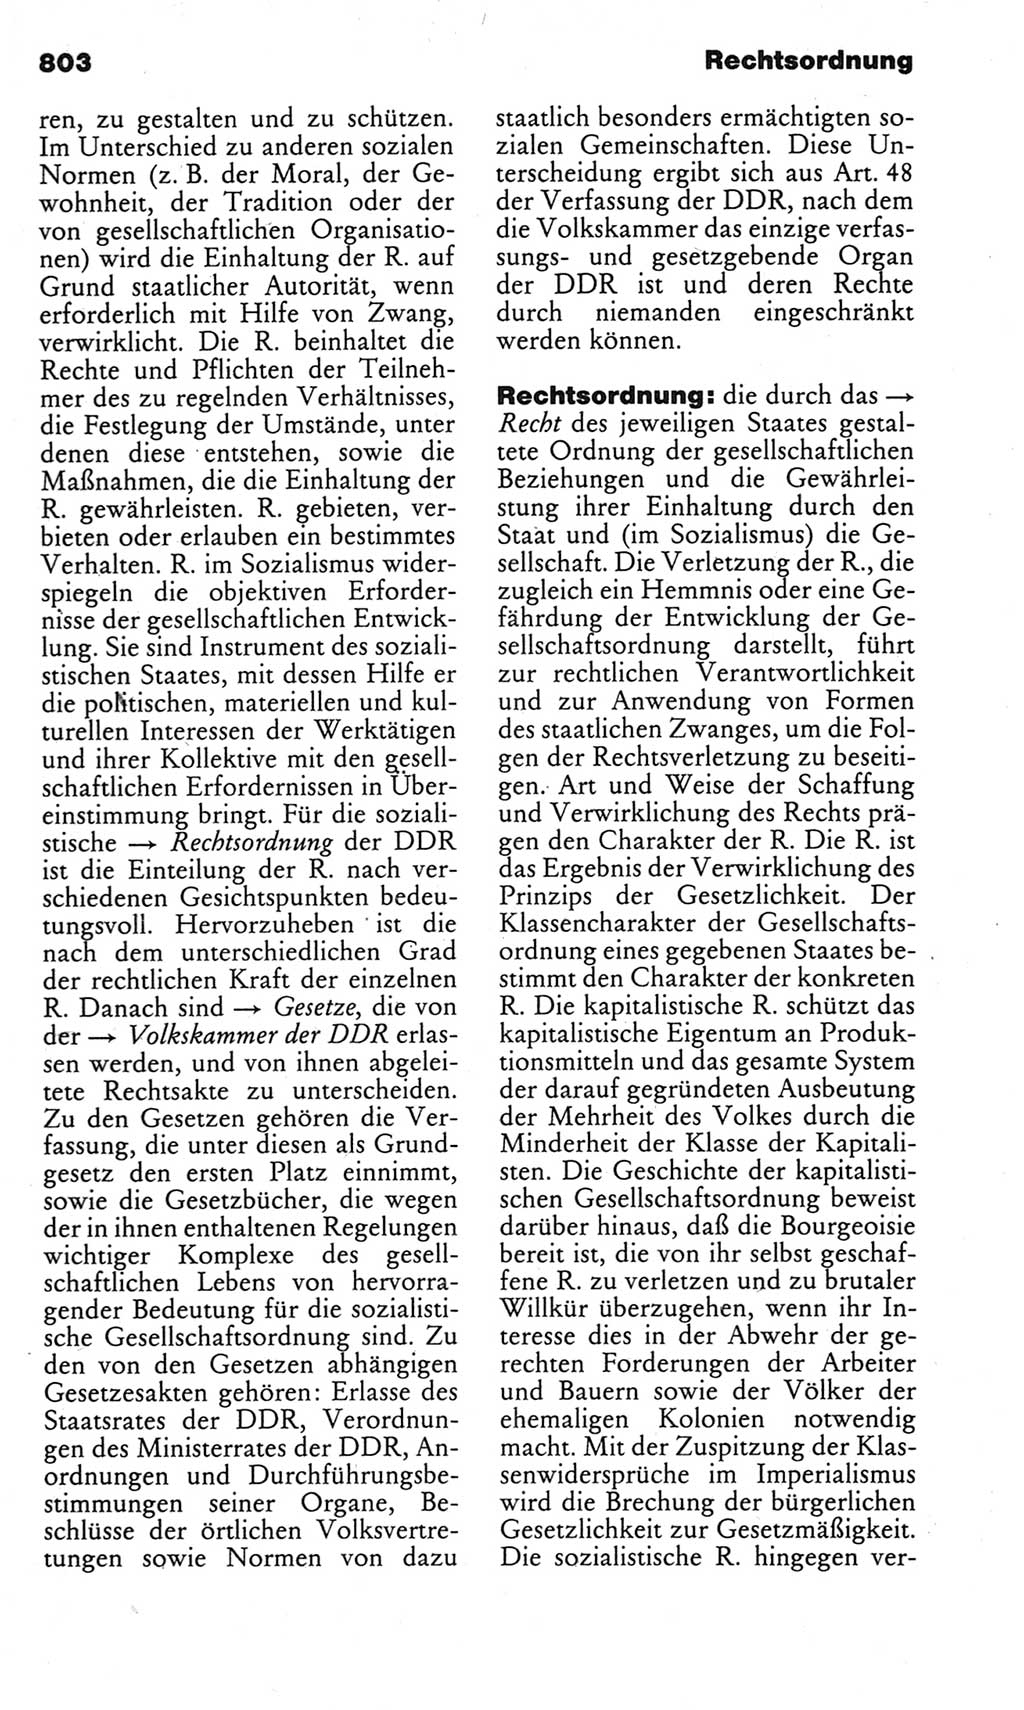 Kleines politisches Wörterbuch [Deutsche Demokratische Republik (DDR)] 1983, Seite 803 (Kl. pol. Wb. DDR 1983, S. 803)